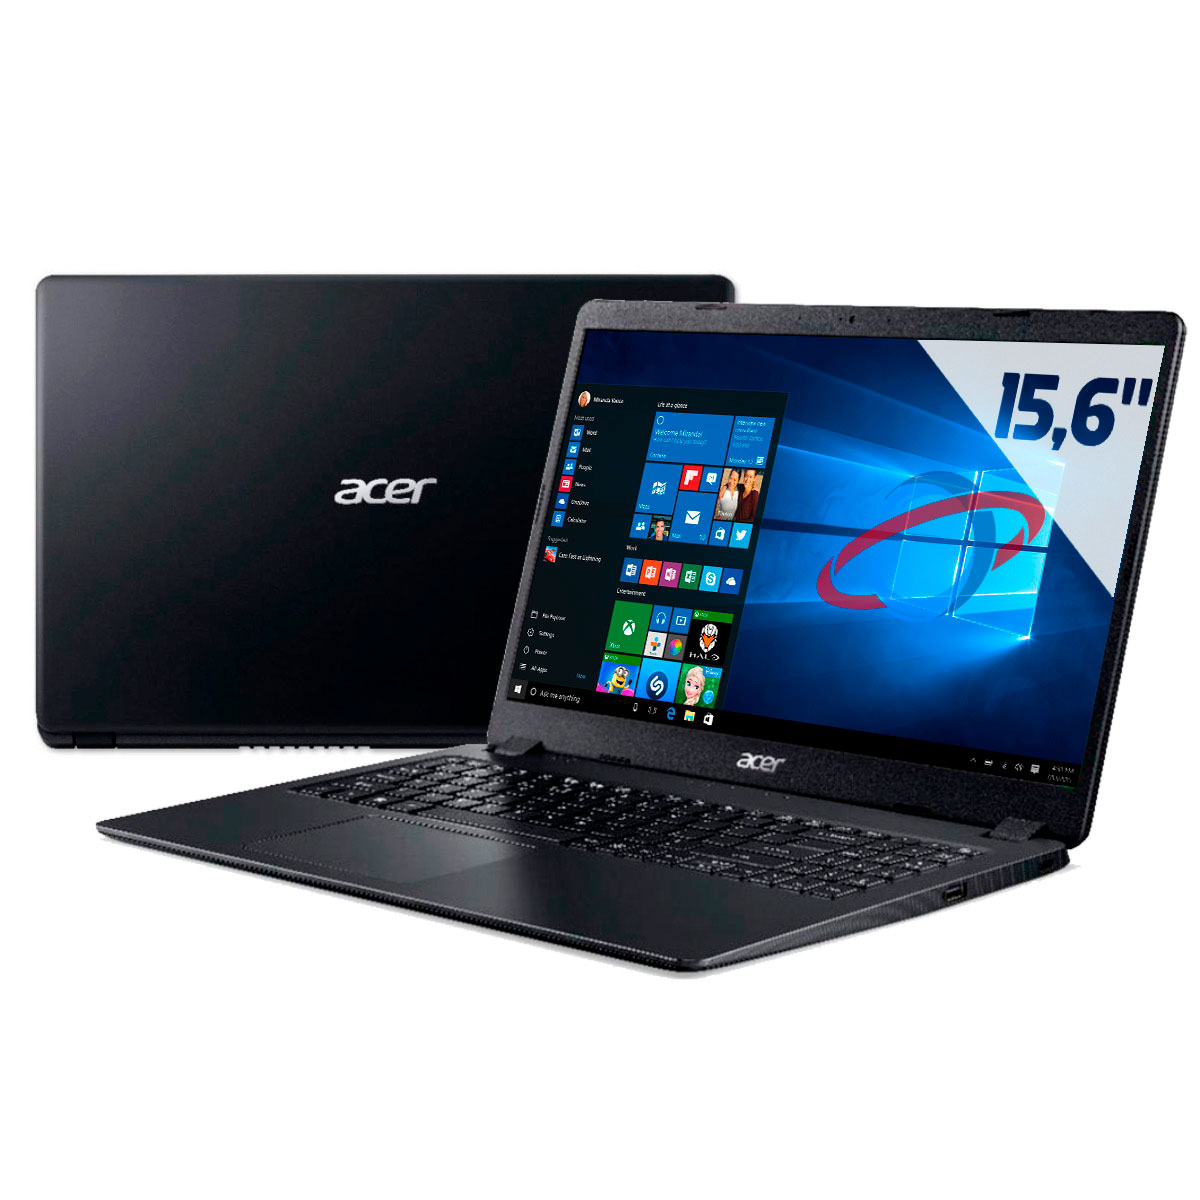 Notebook Acer Aspire A315-56-569F - Intel i5 1035G1, 8GB, SSD 256GB, Tela 15.6